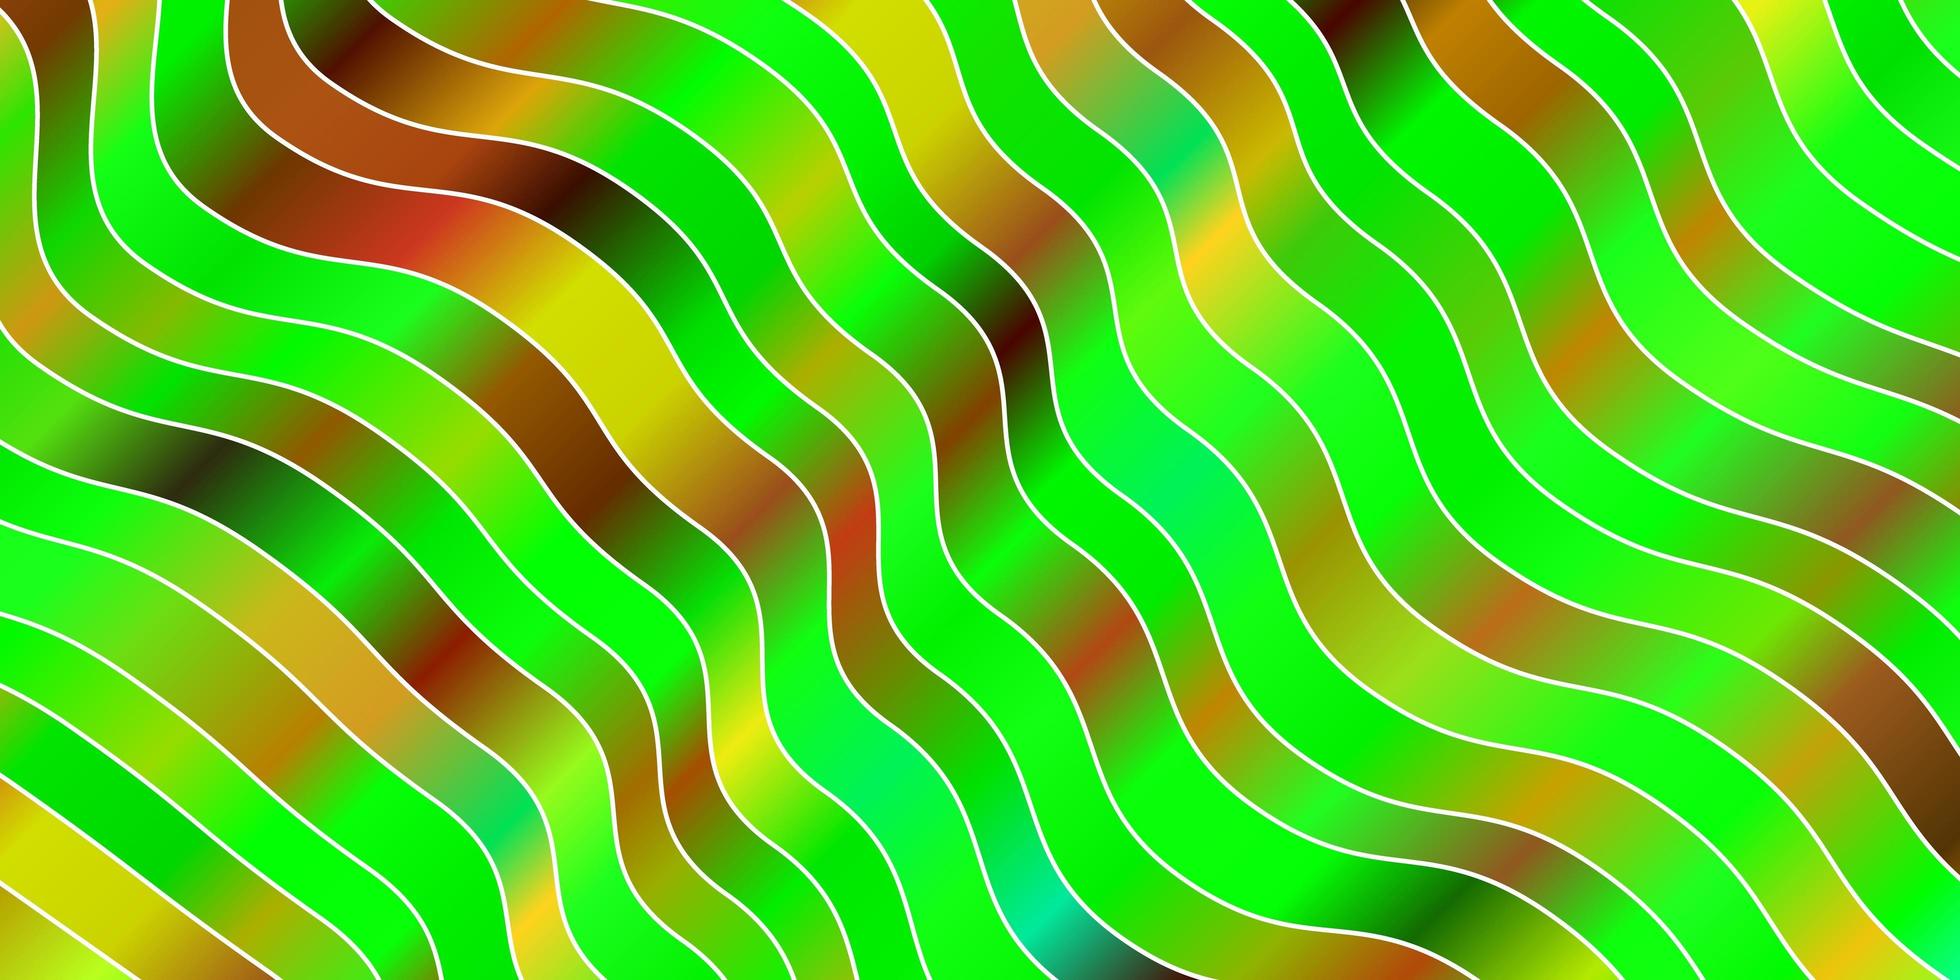 sfondo vettoriale multicolore scuro con linee piegate.